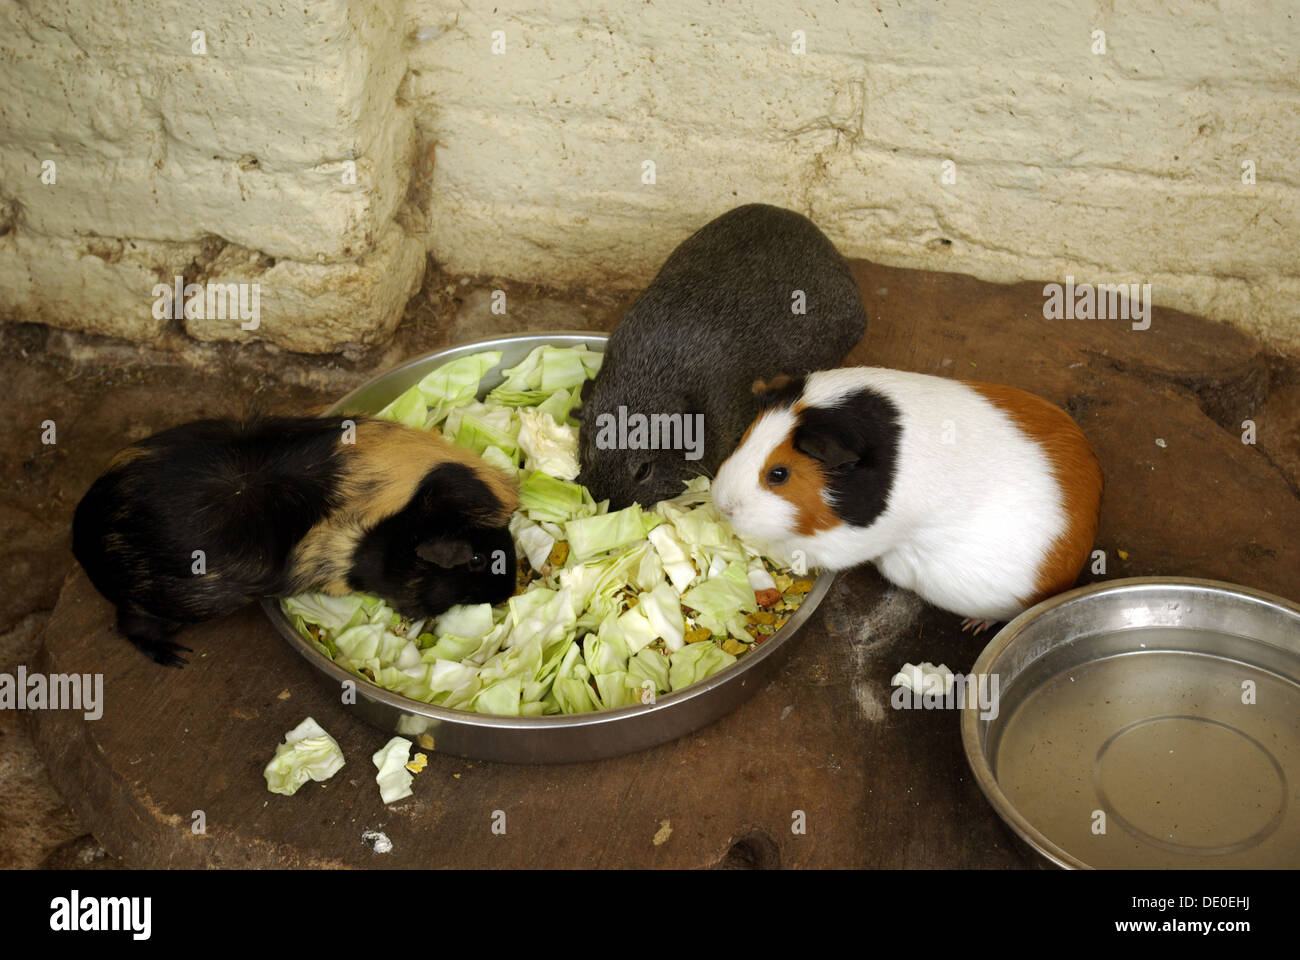 guinea pigs, Cavia porcellus, cavy Stock Photo